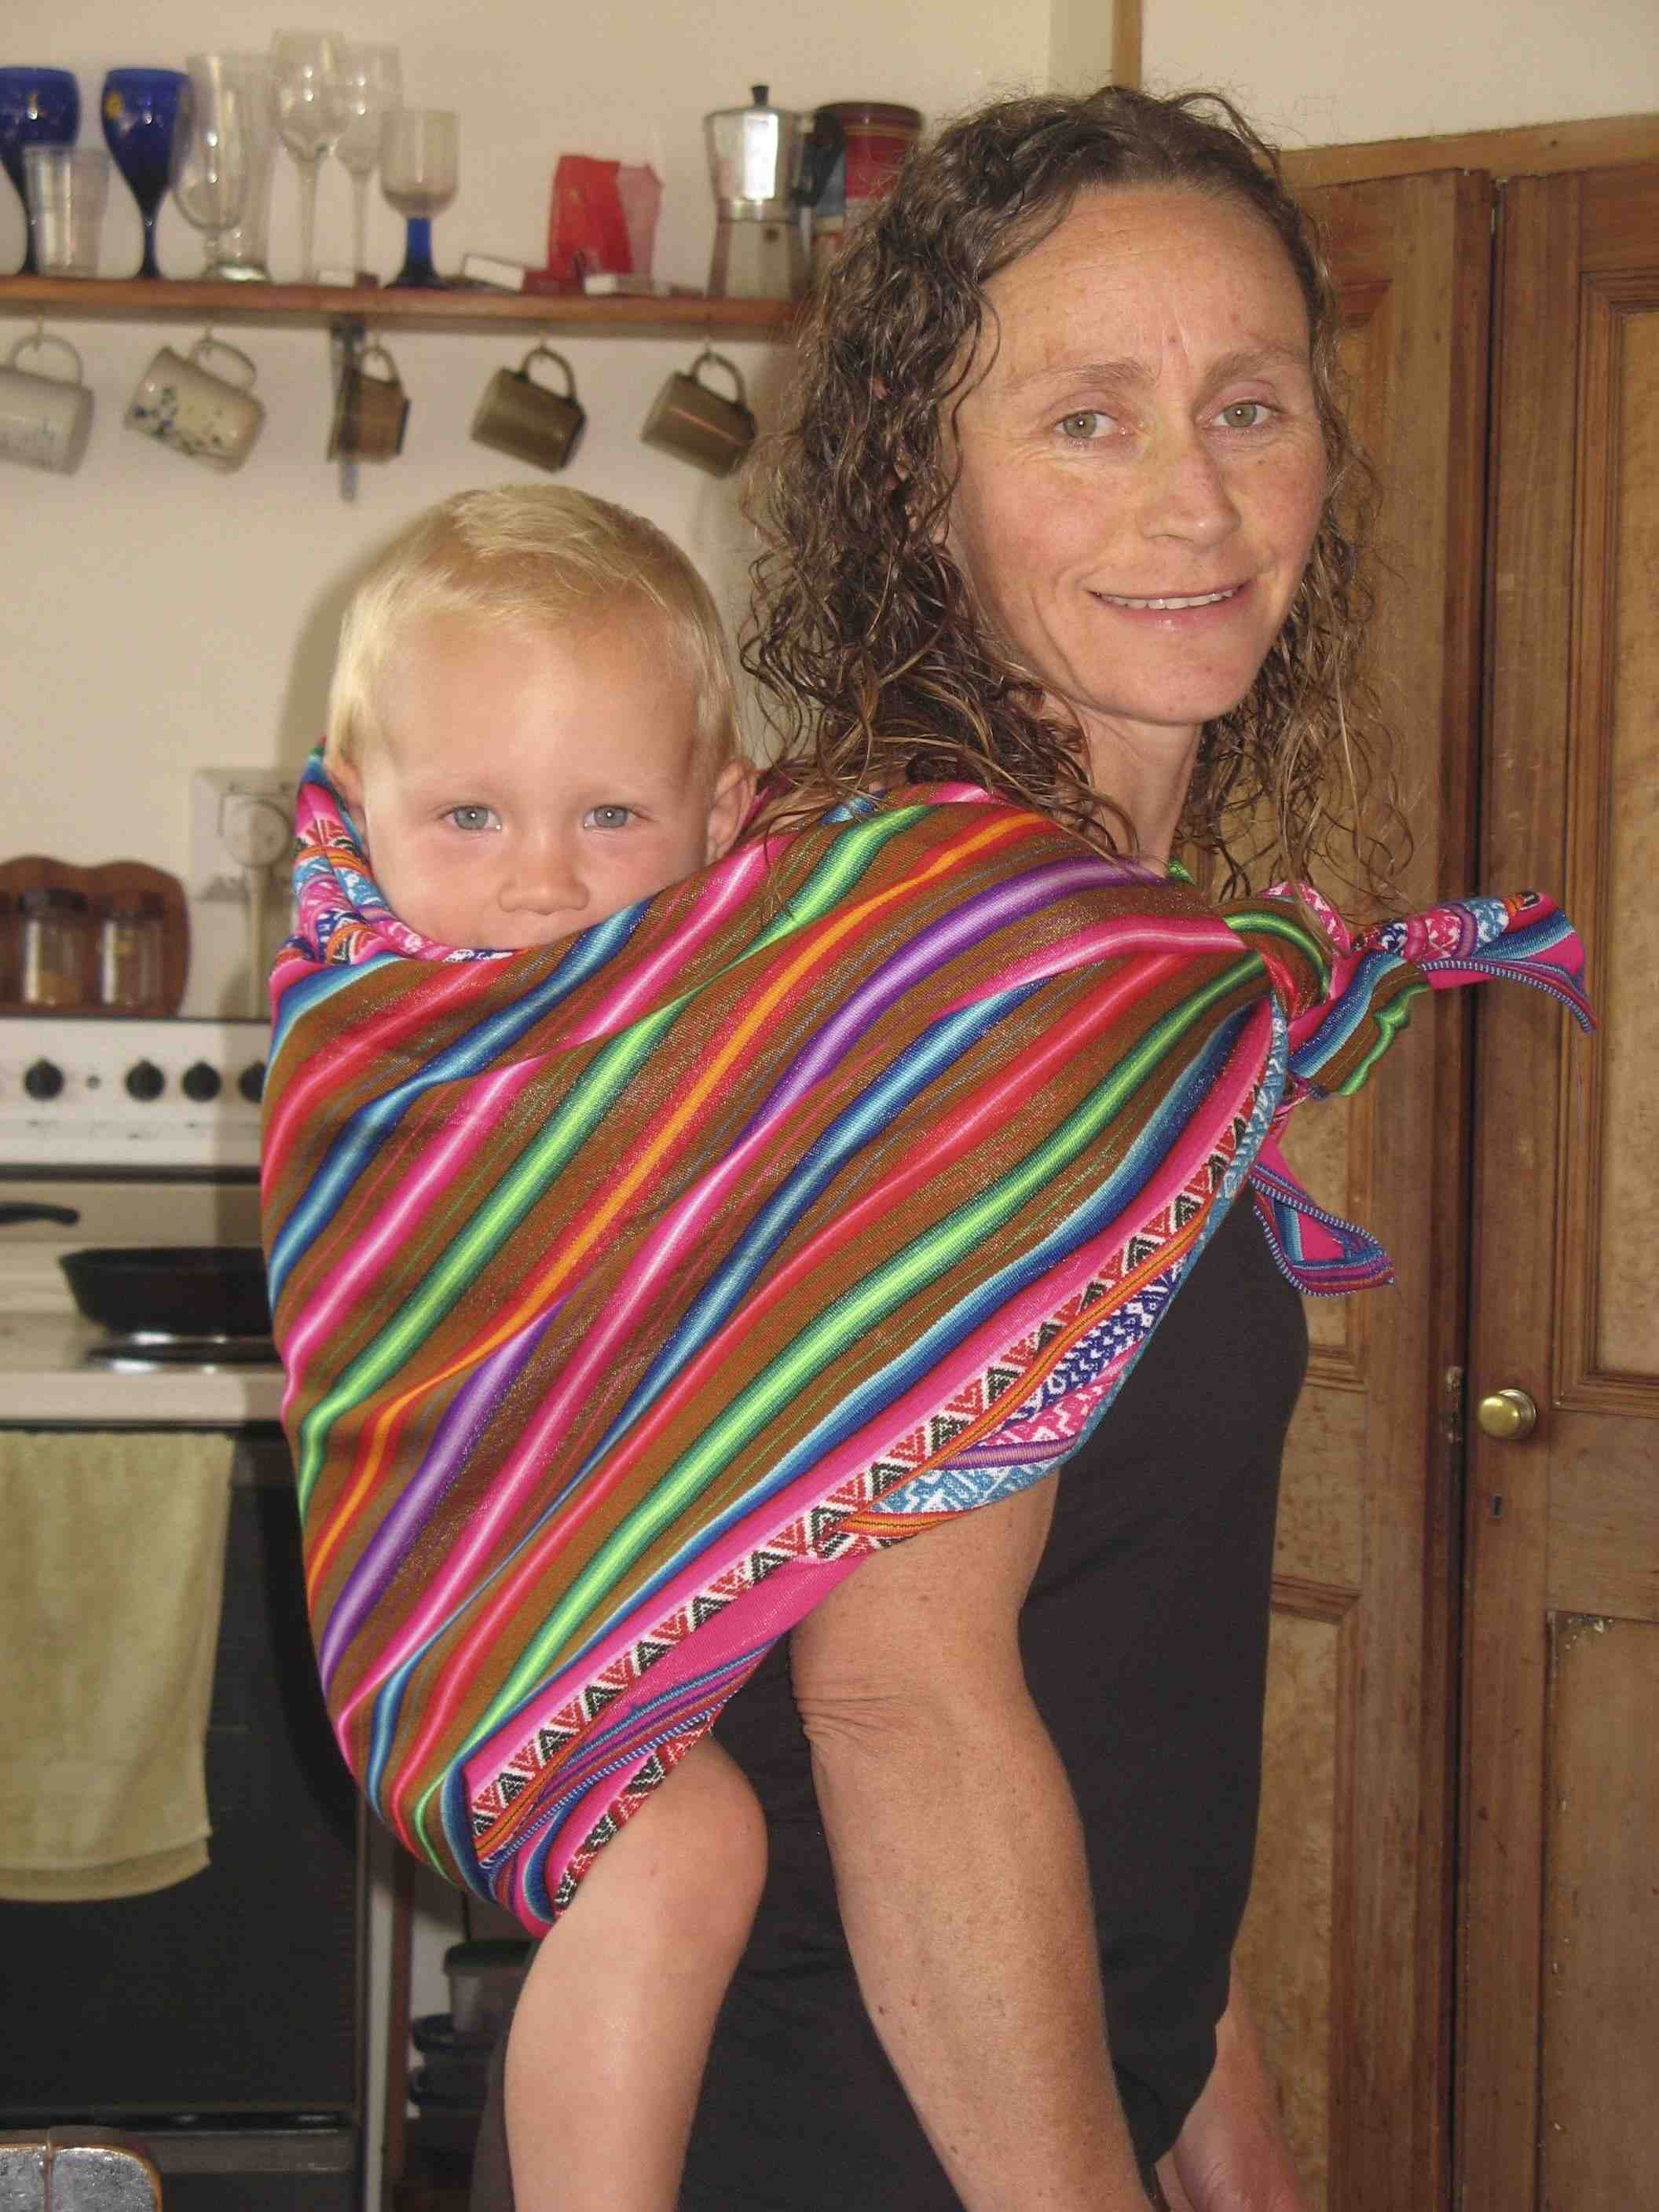 peruvian baby sling